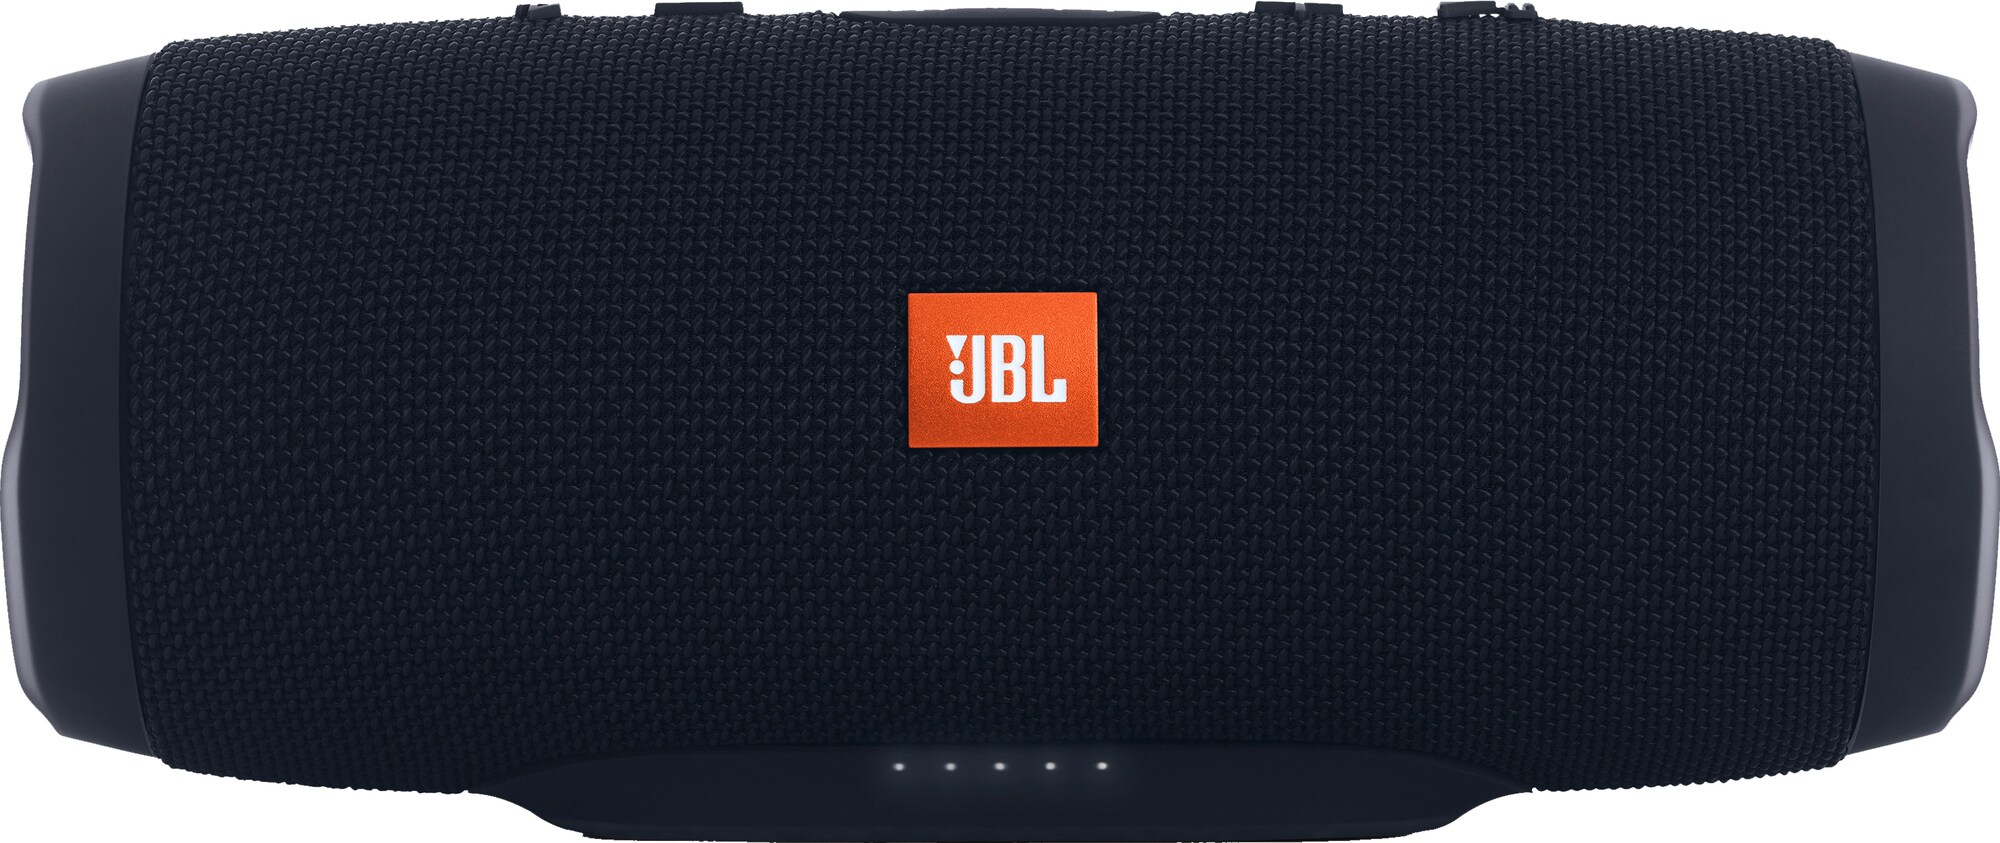 JBL Charge 3 Stealth Edition trådløs høyttaler (sort) - Elkjøp